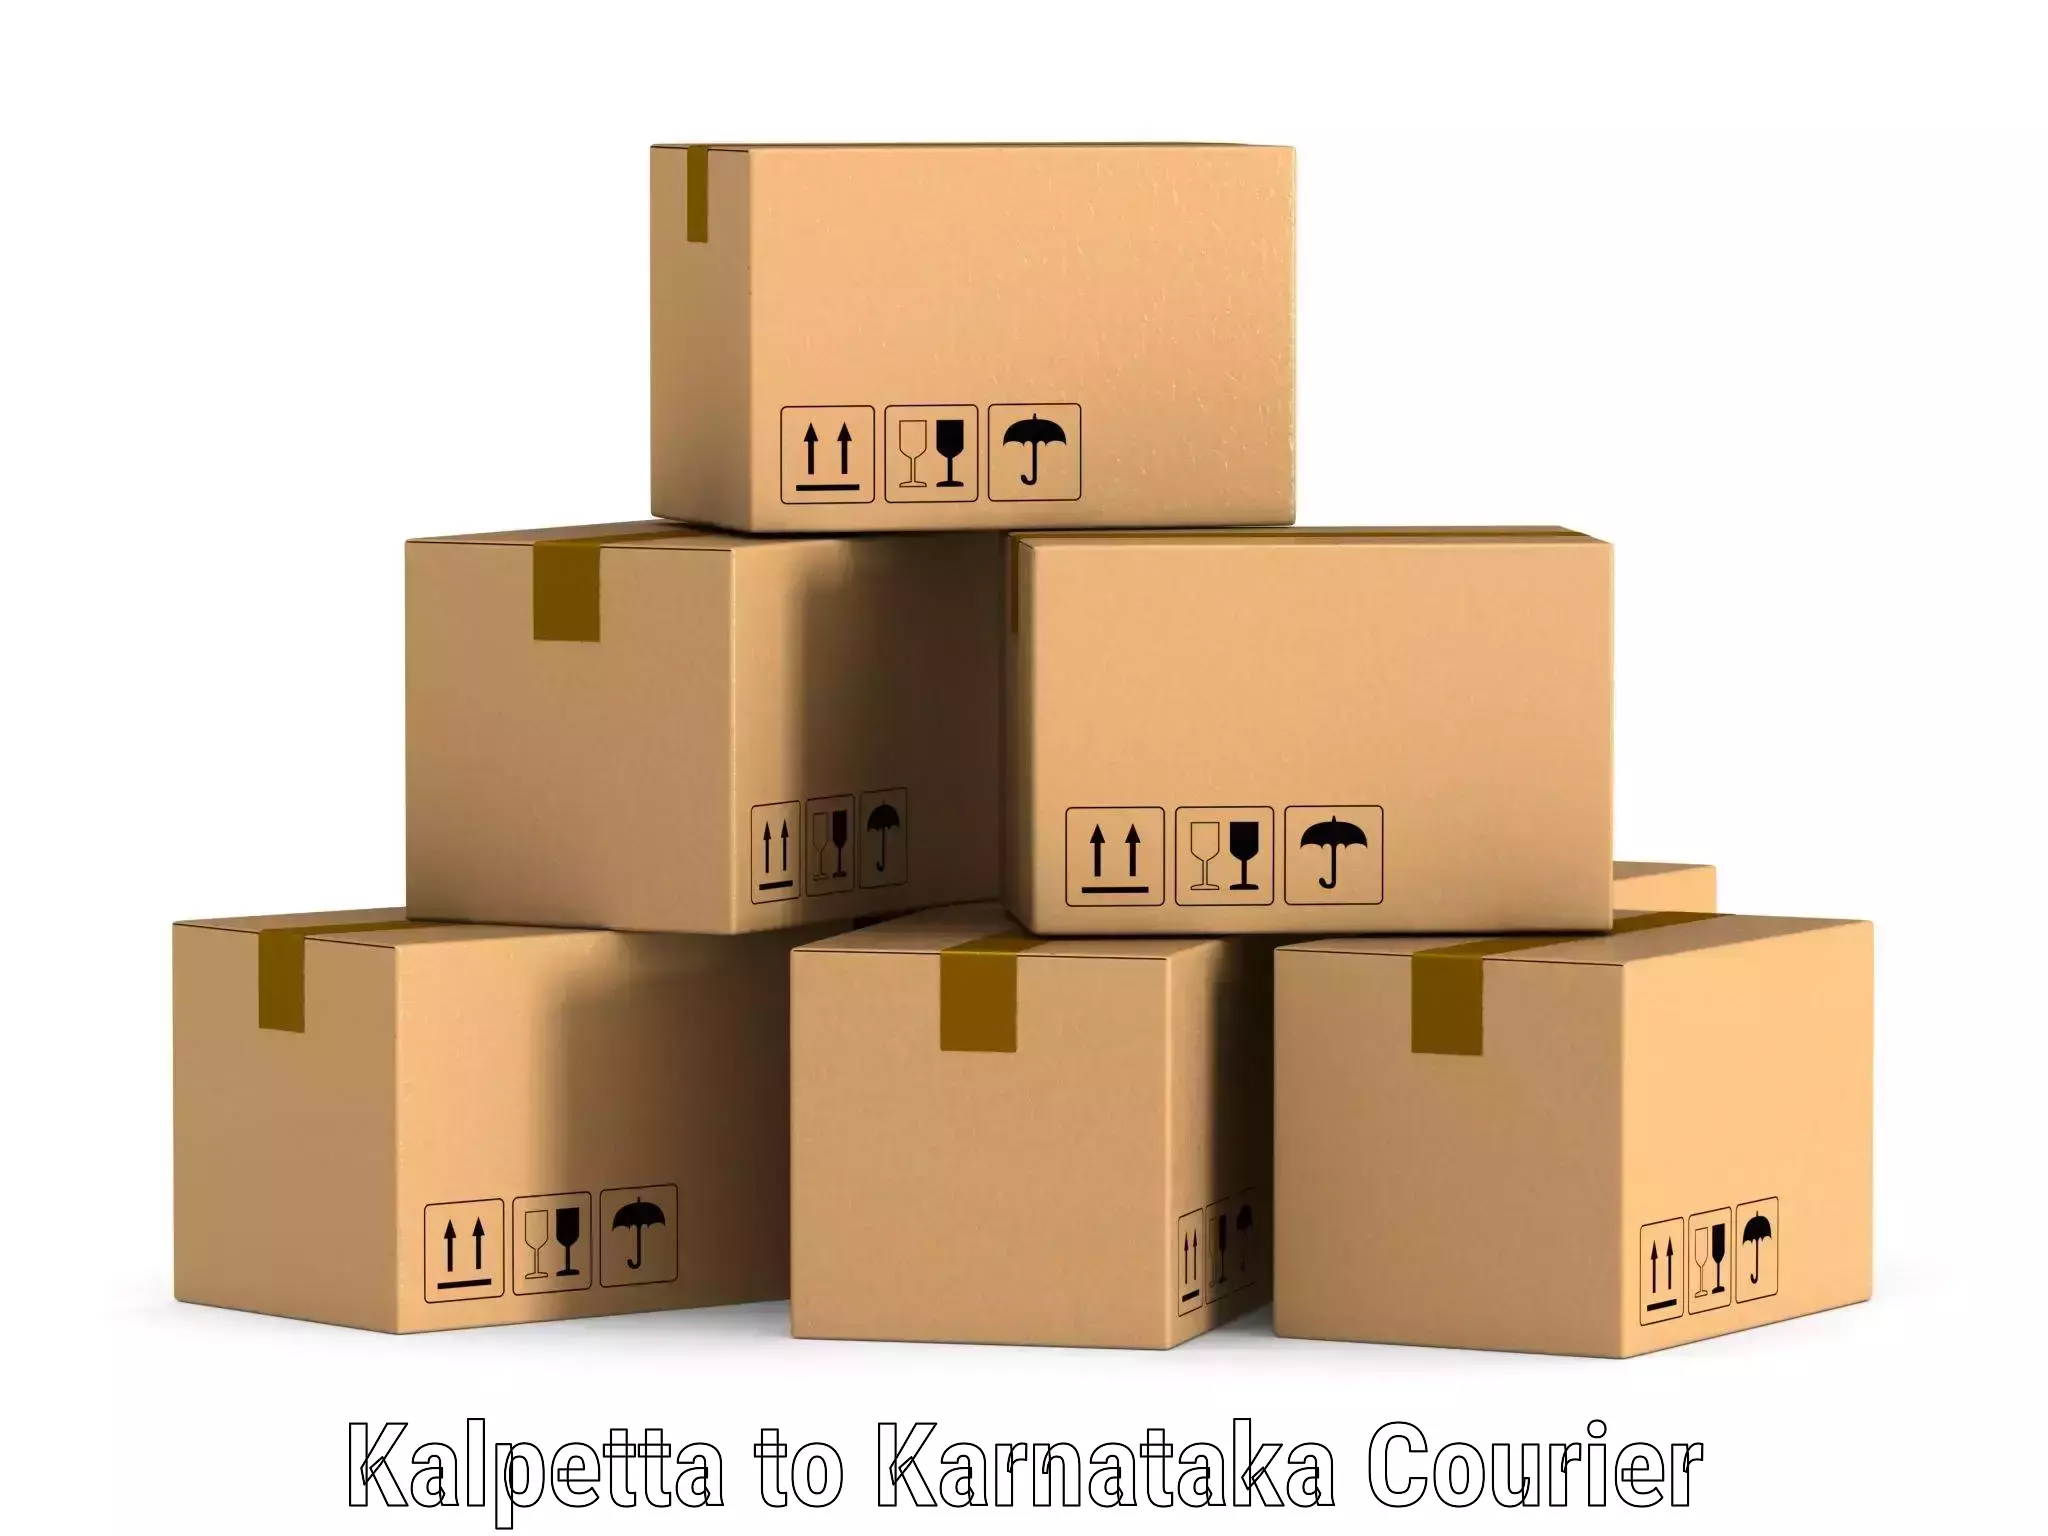 Customer-centric shipping Kalpetta to Karnataka